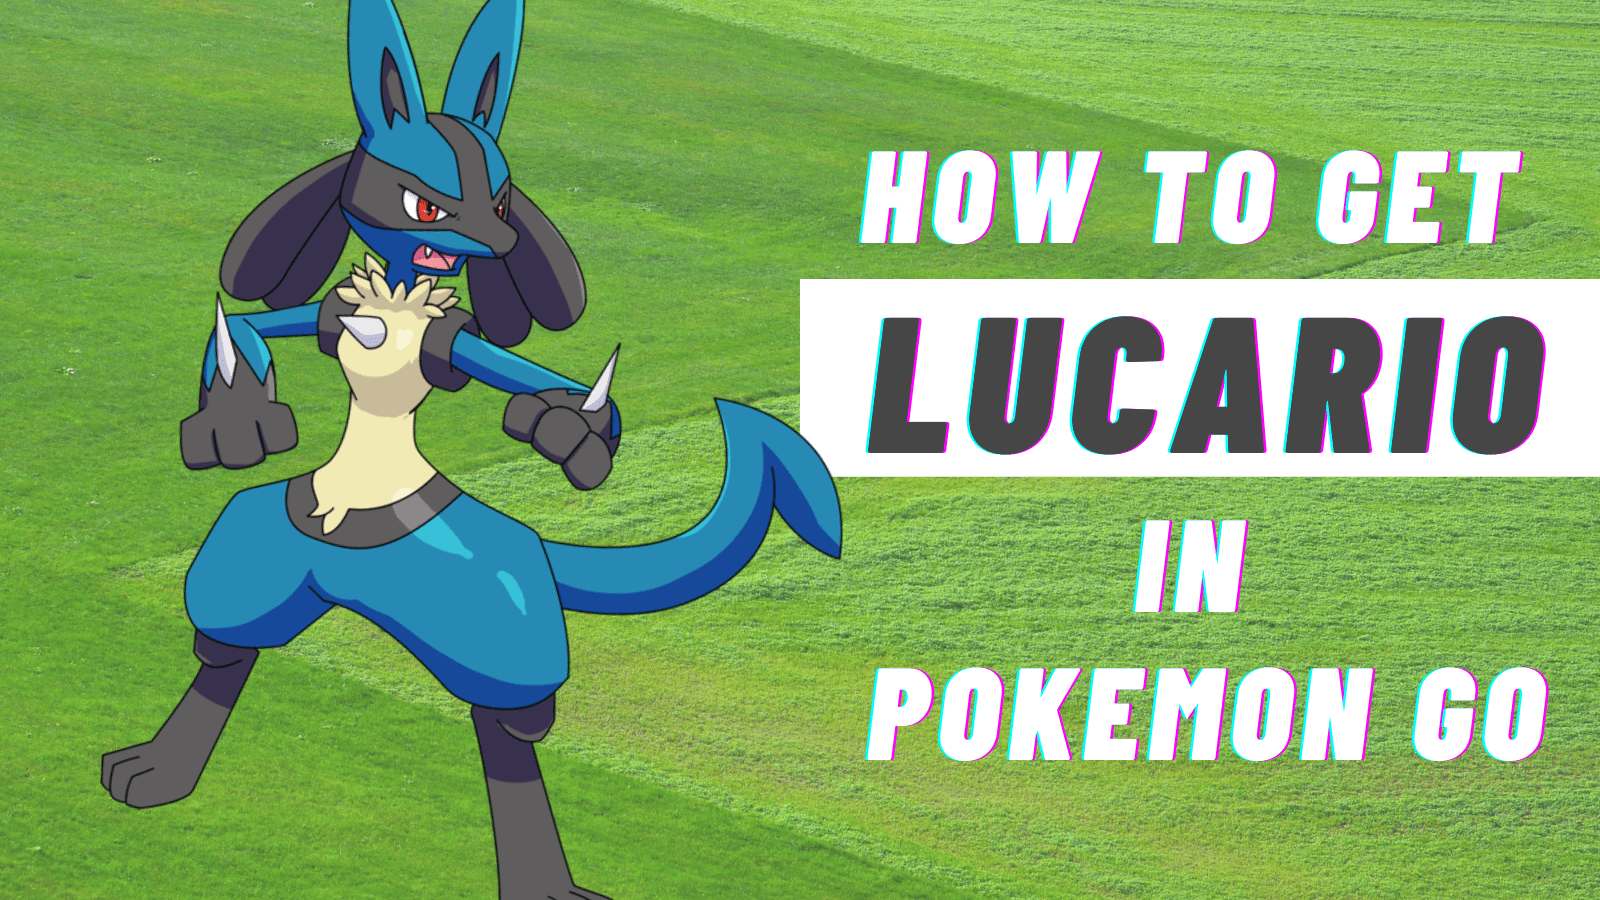 Lucario, Pokémon